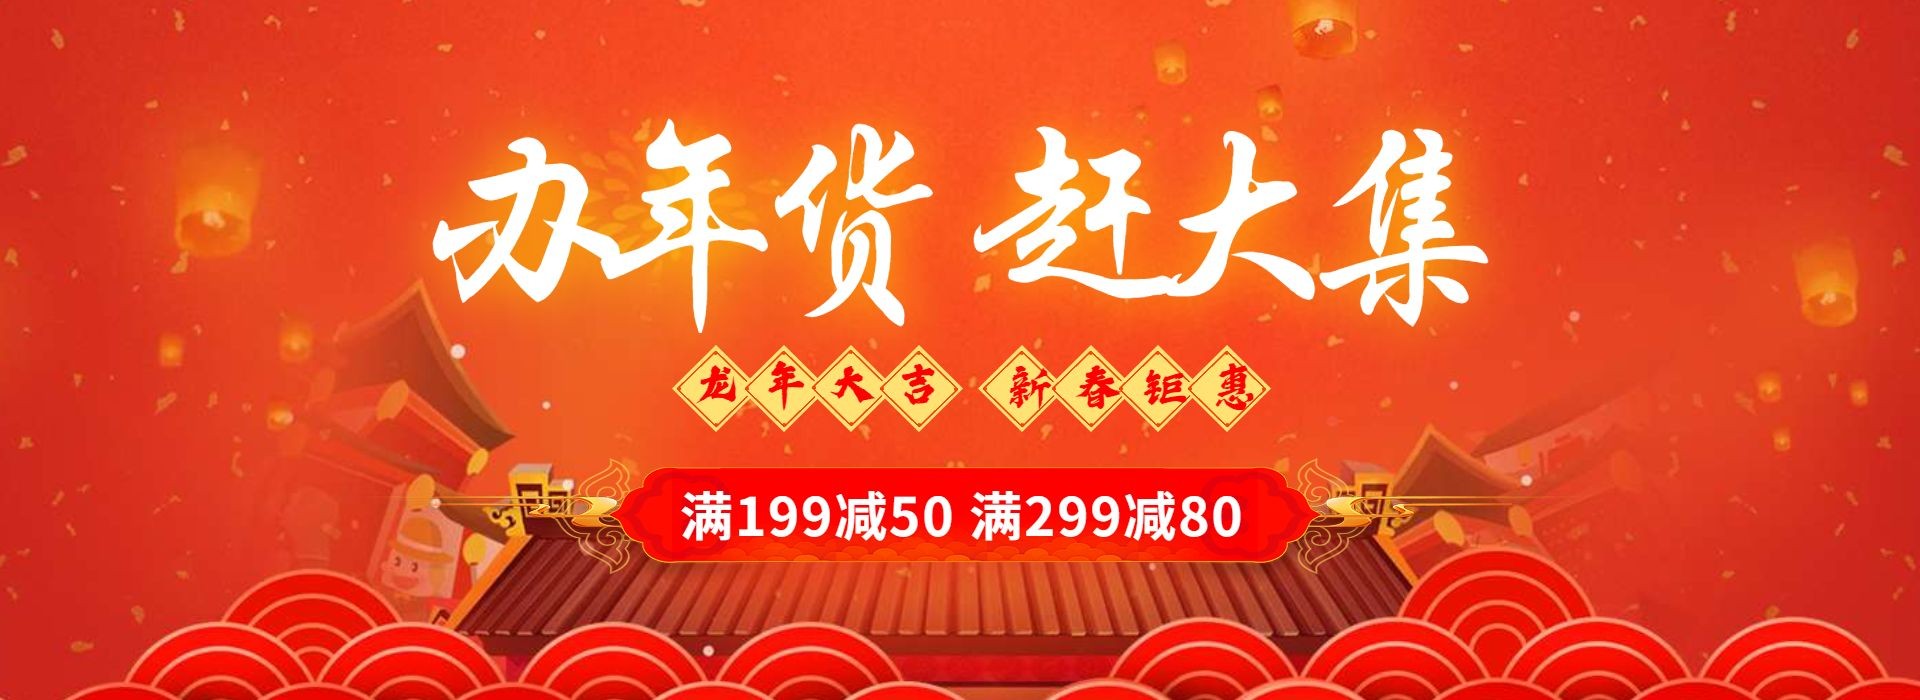 年货节春节喜庆满减优惠橙色海报banner预览效果